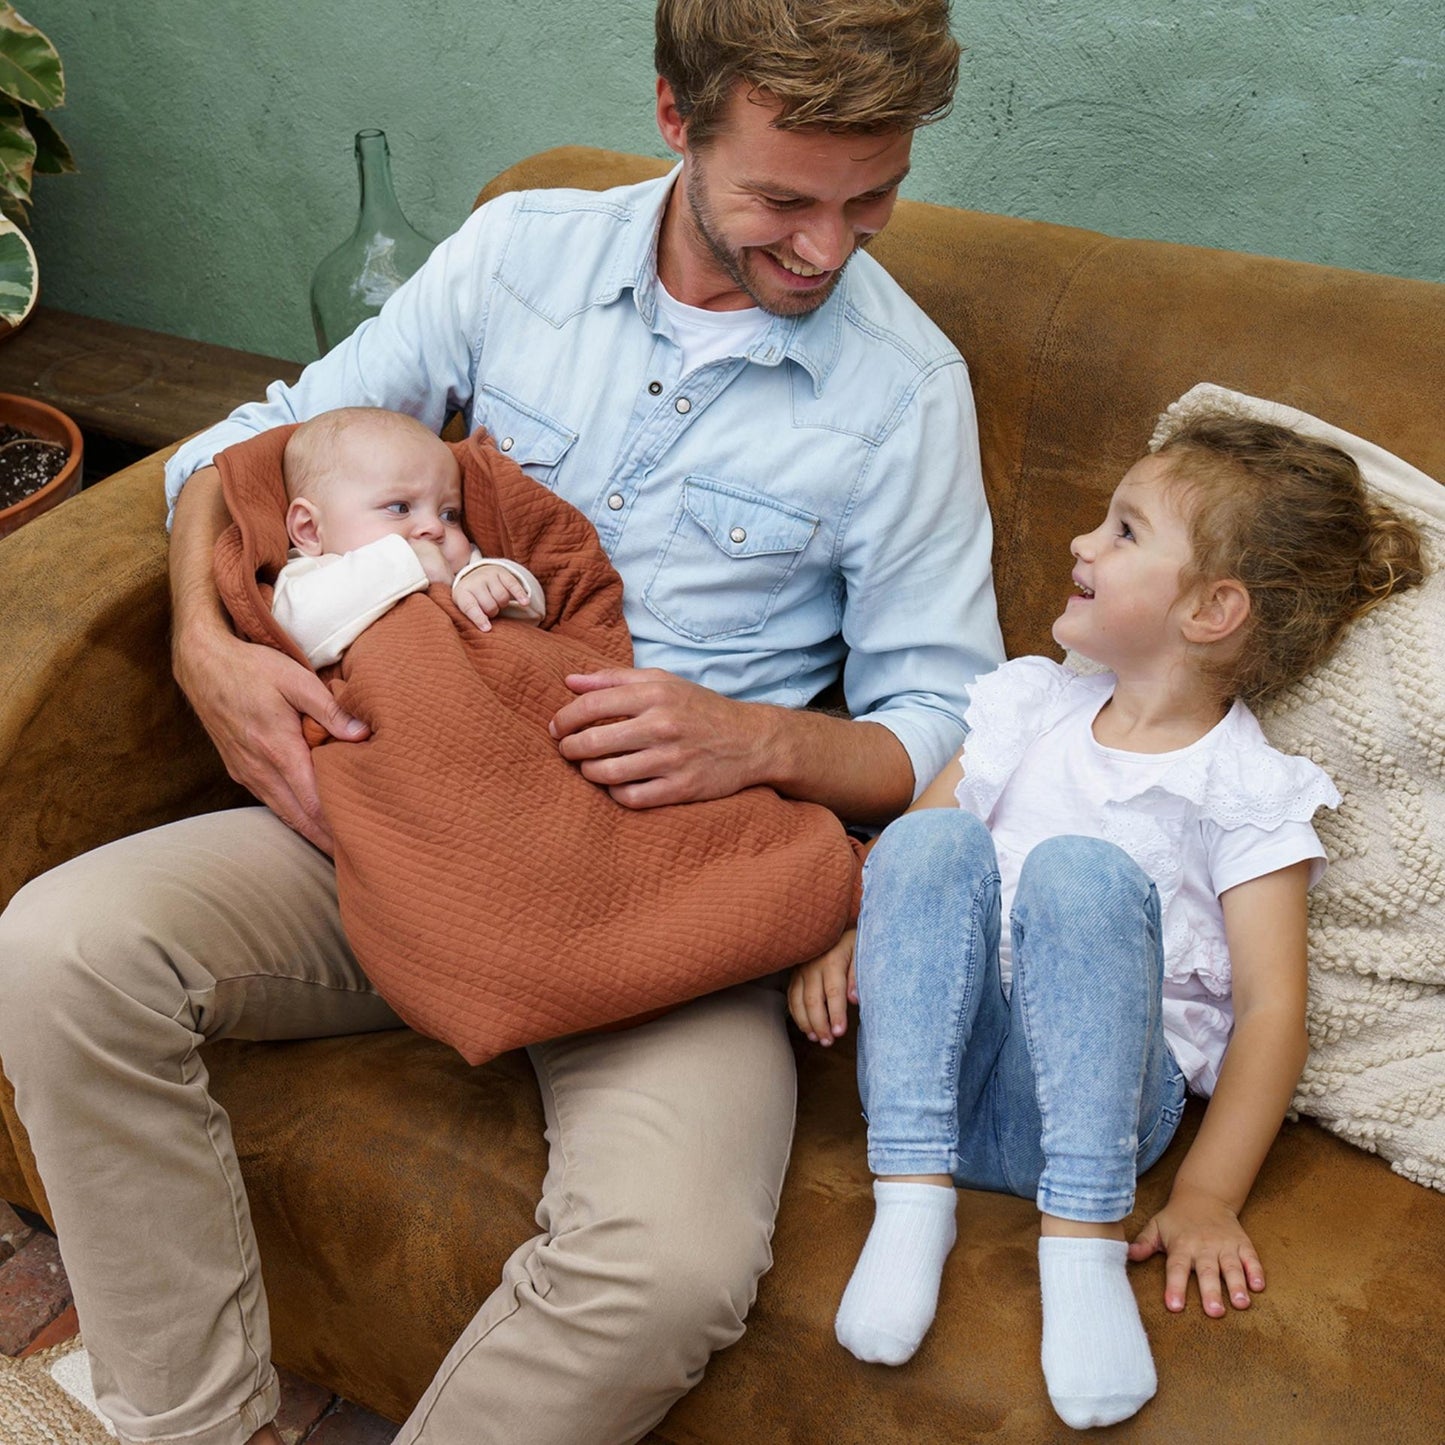 Manta ultra macia para bebé em algodão orgânico - doomoo dream Tetra Jersey terracota